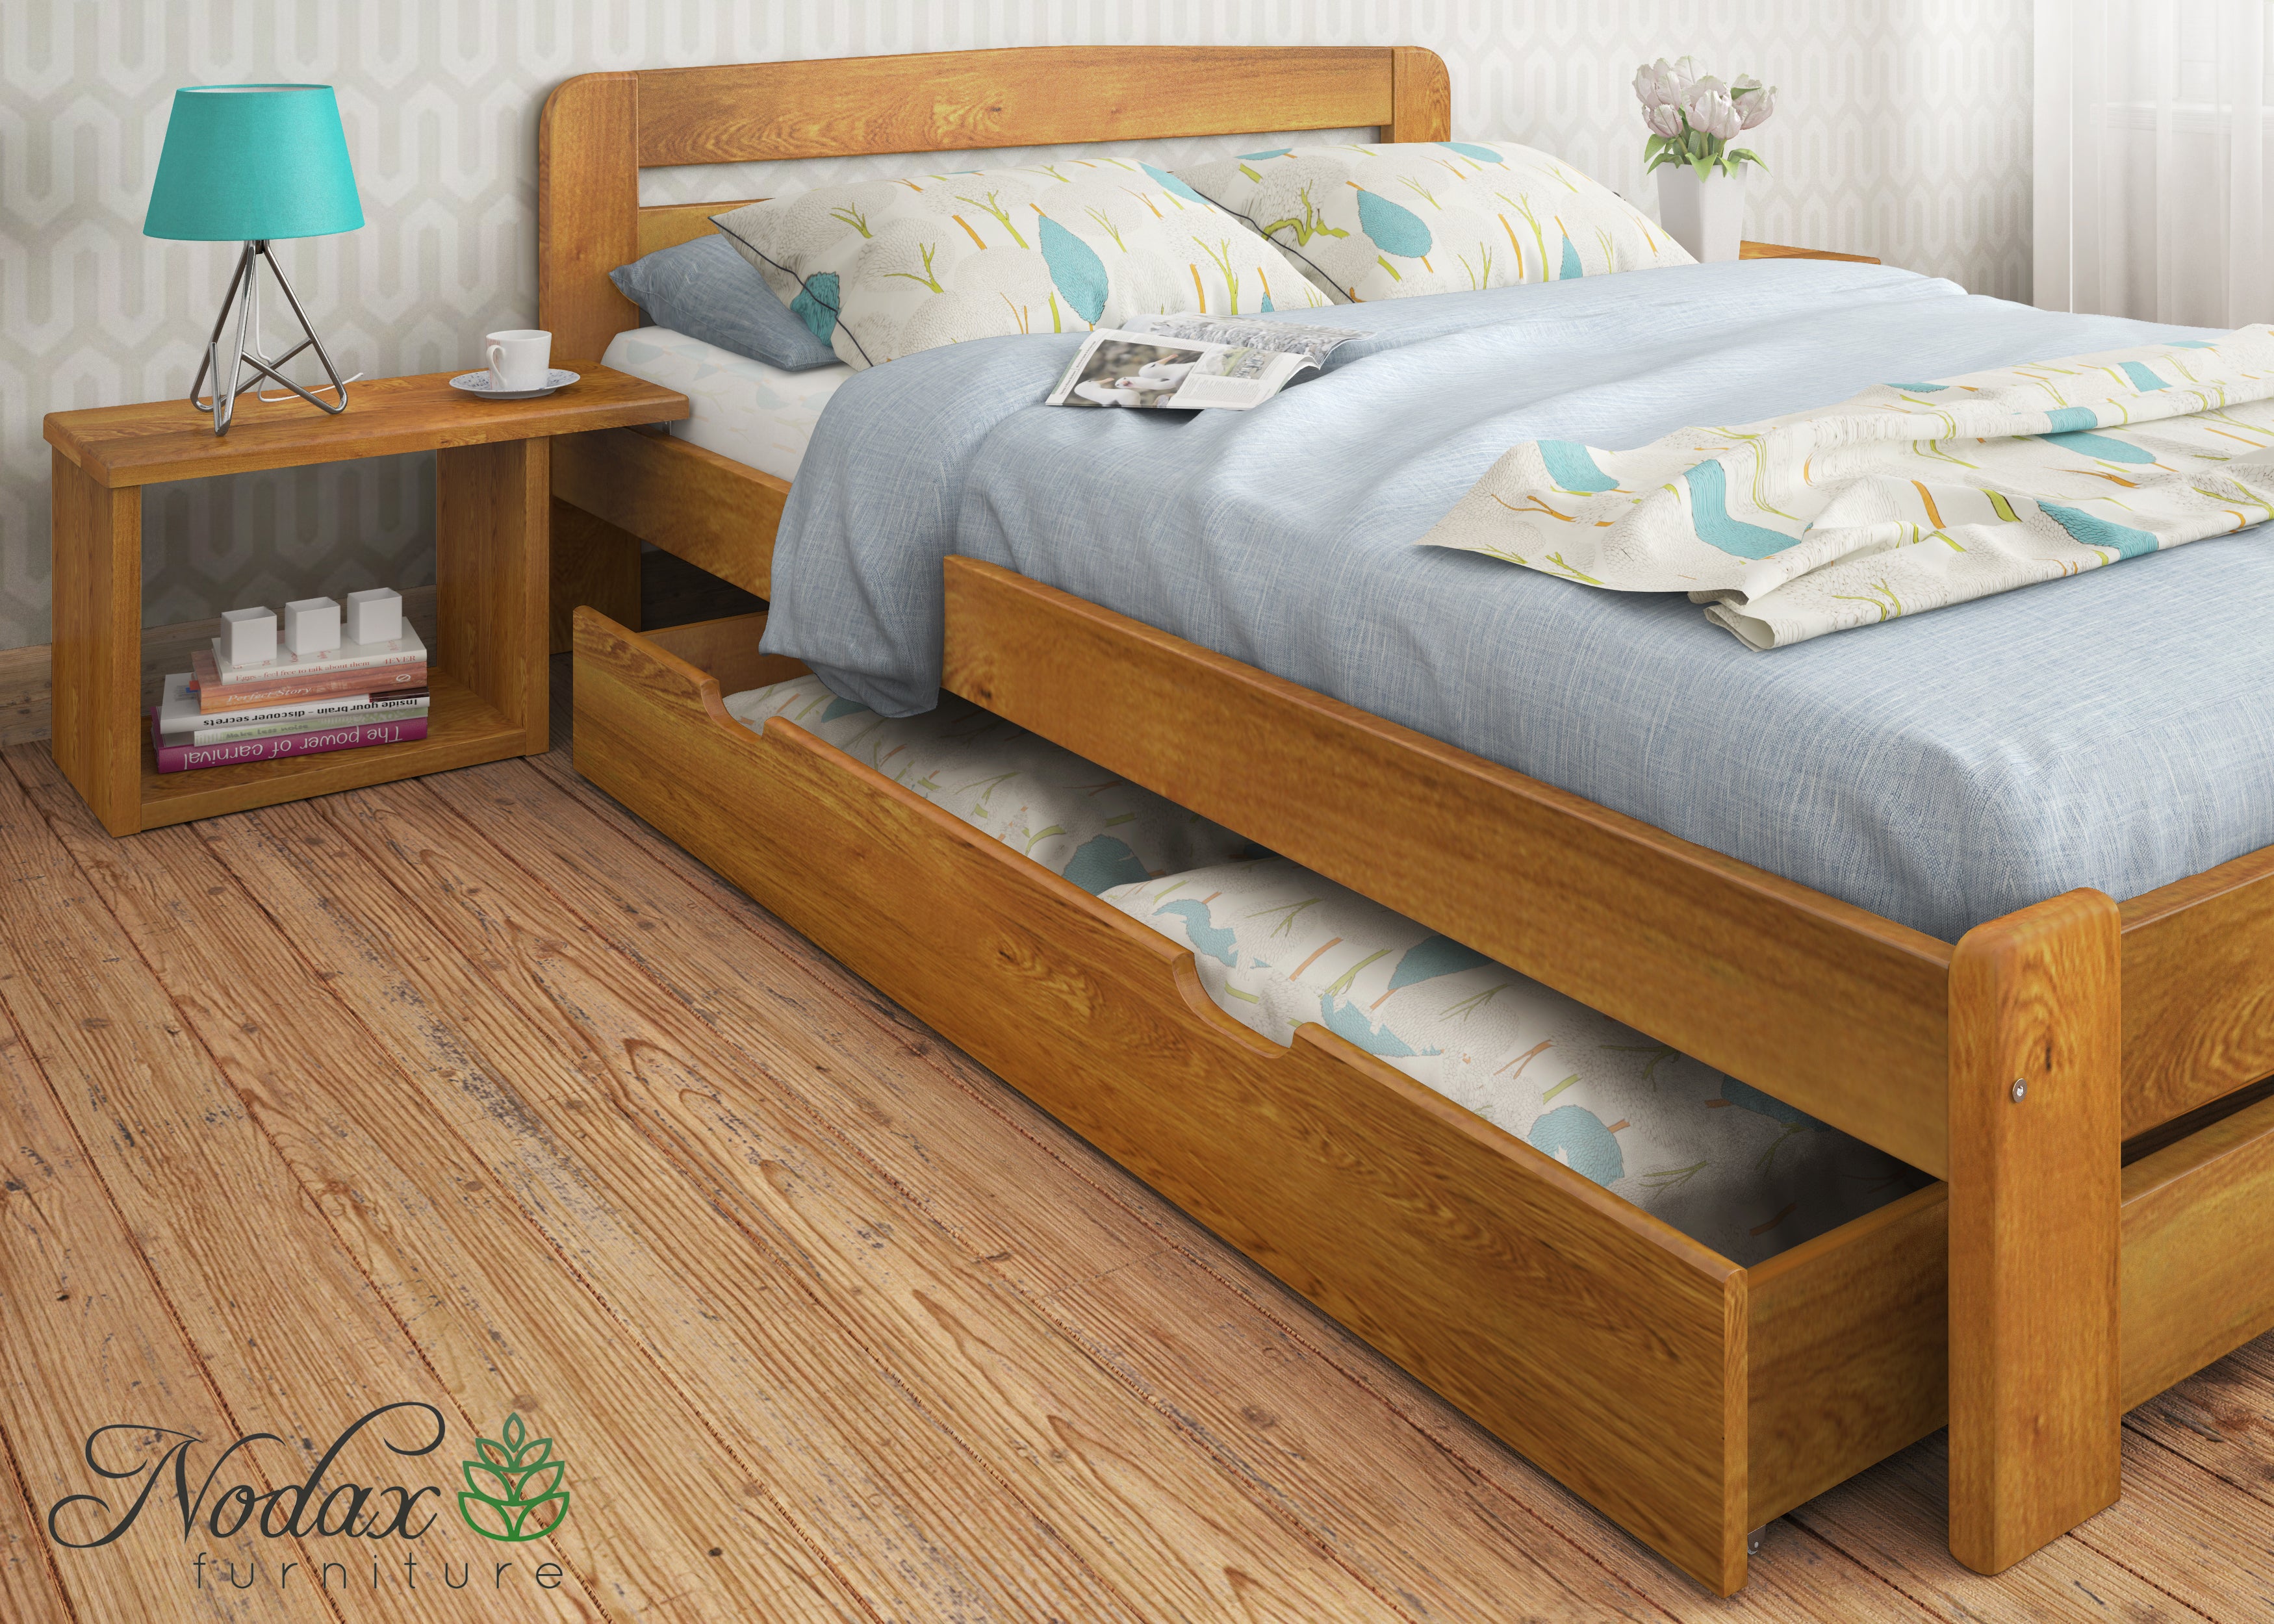 Wooden-bed-frame-Aurora-beds-online-set